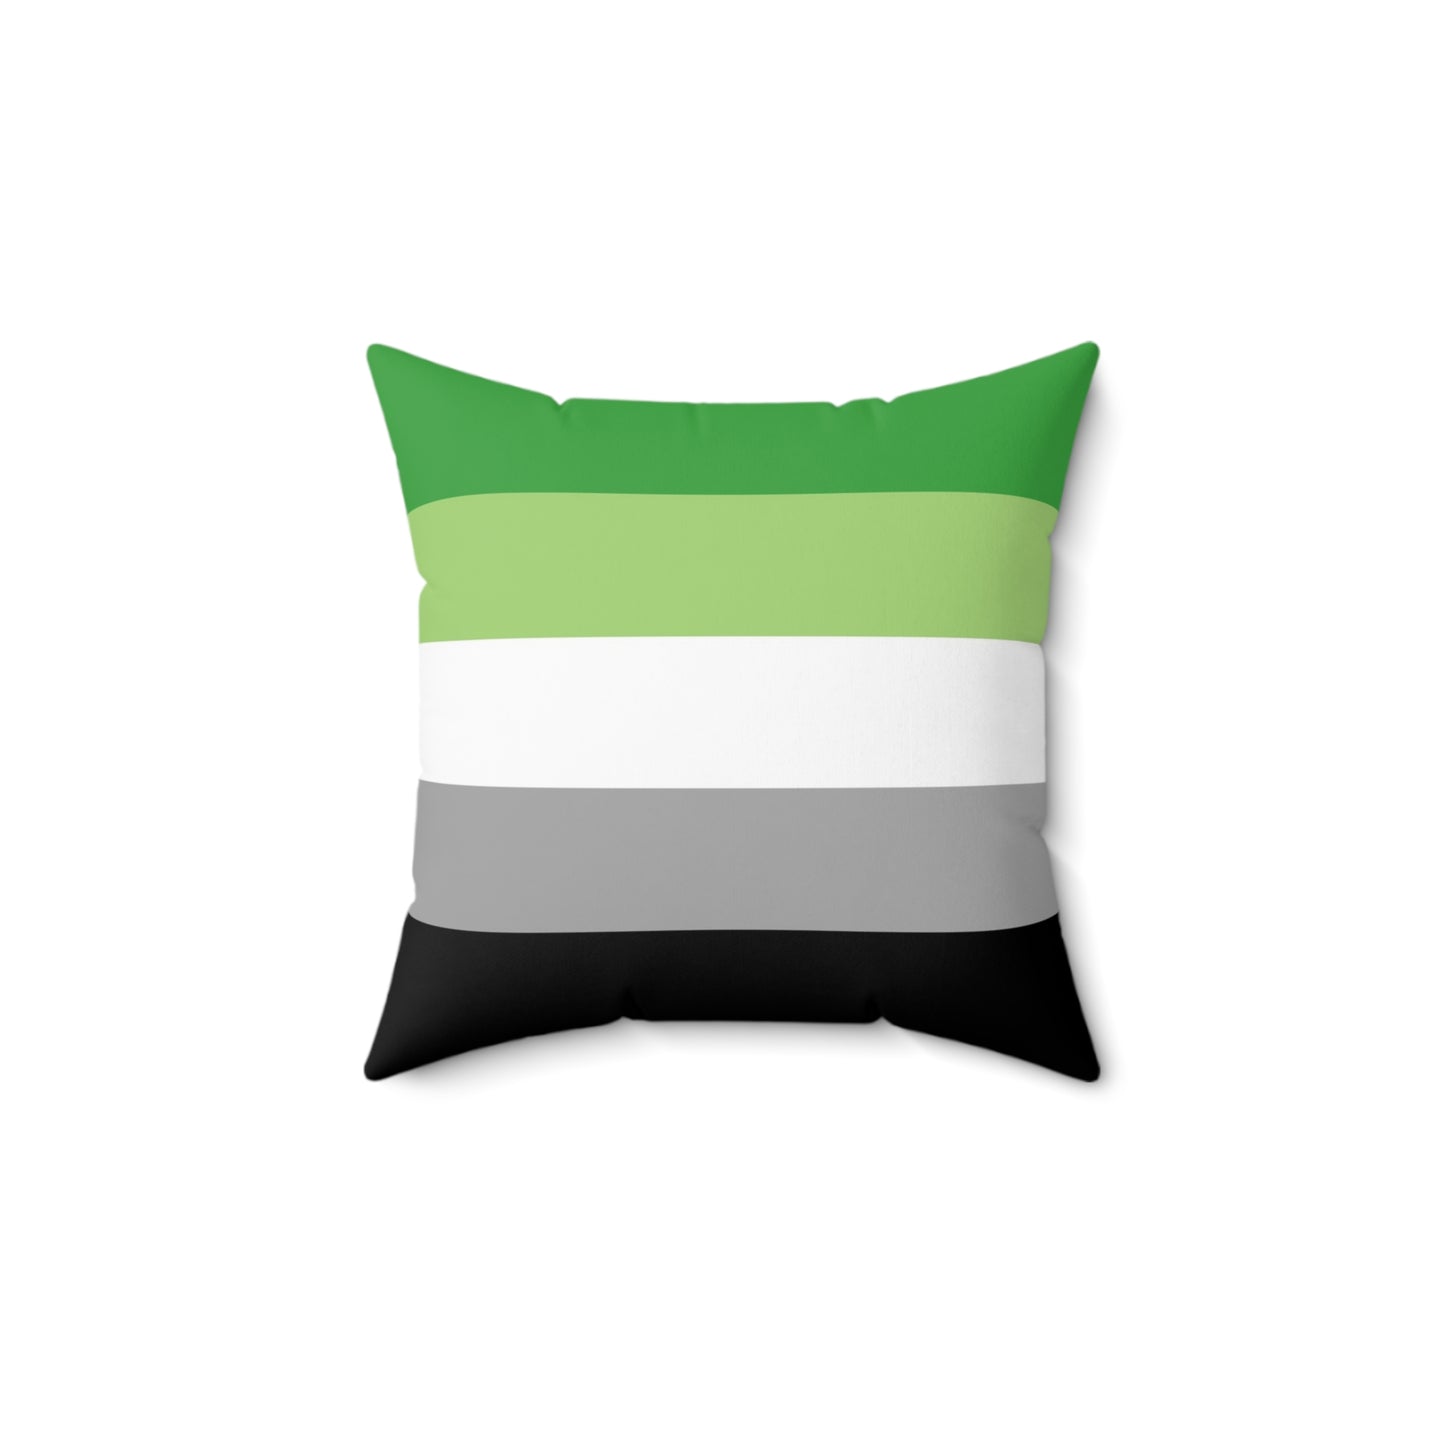 Throw Pillow | Aromantic Pride Flag | Green White Grey Black